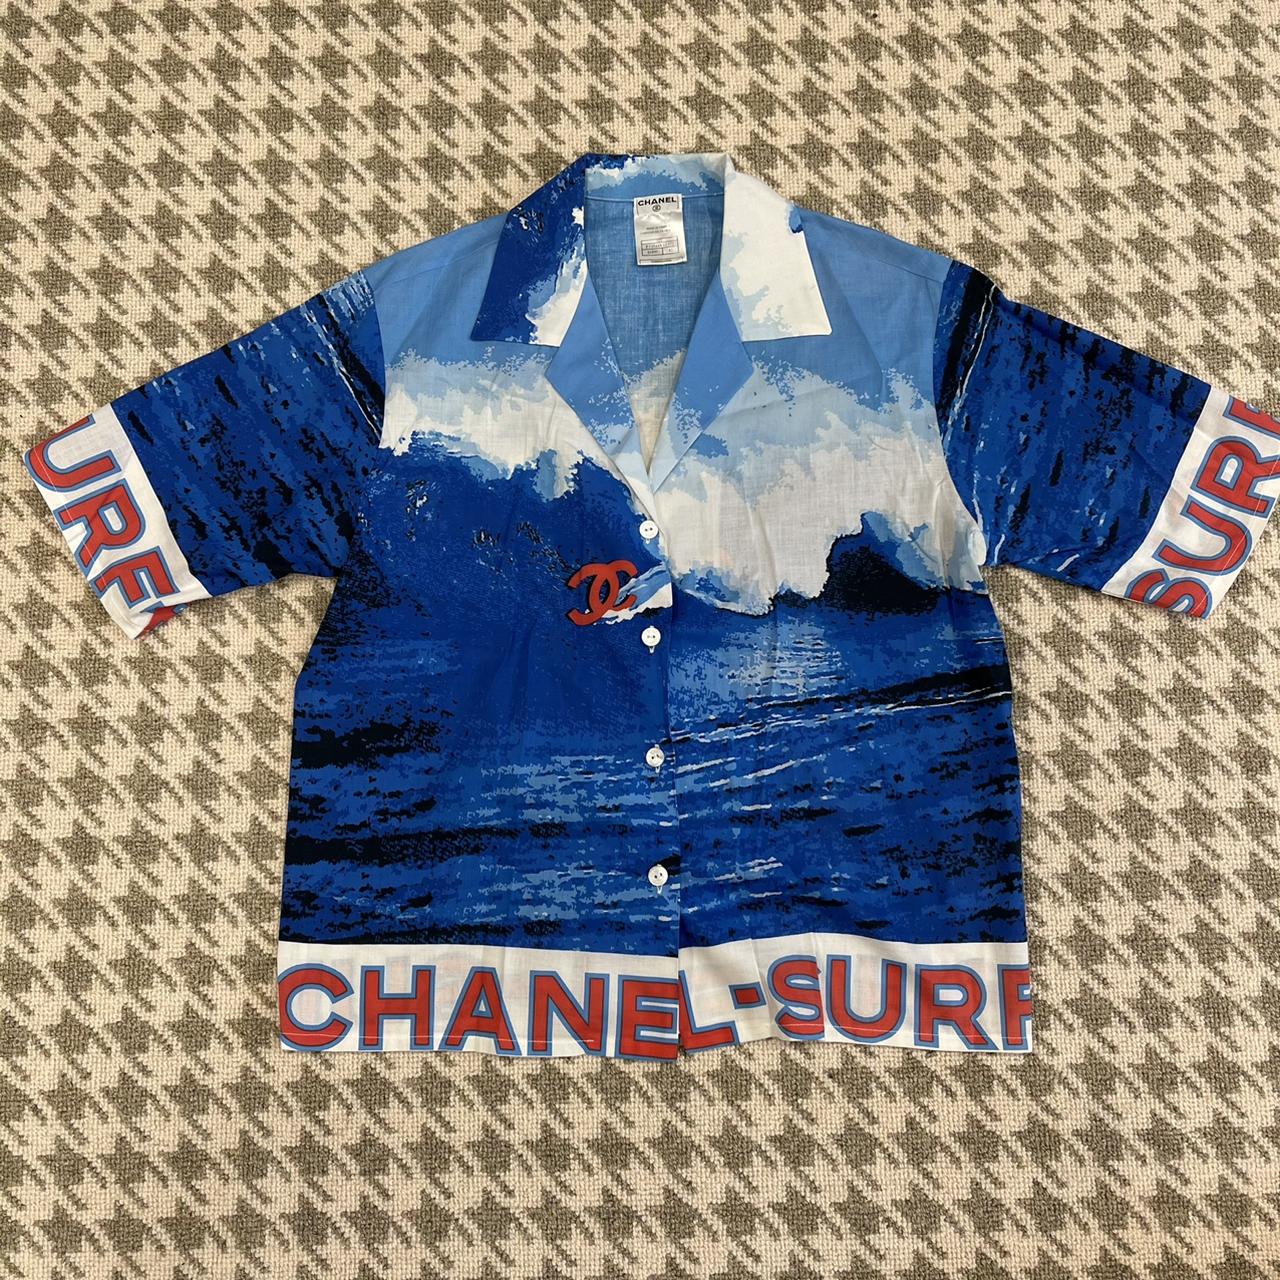 Chanel surf - Depop